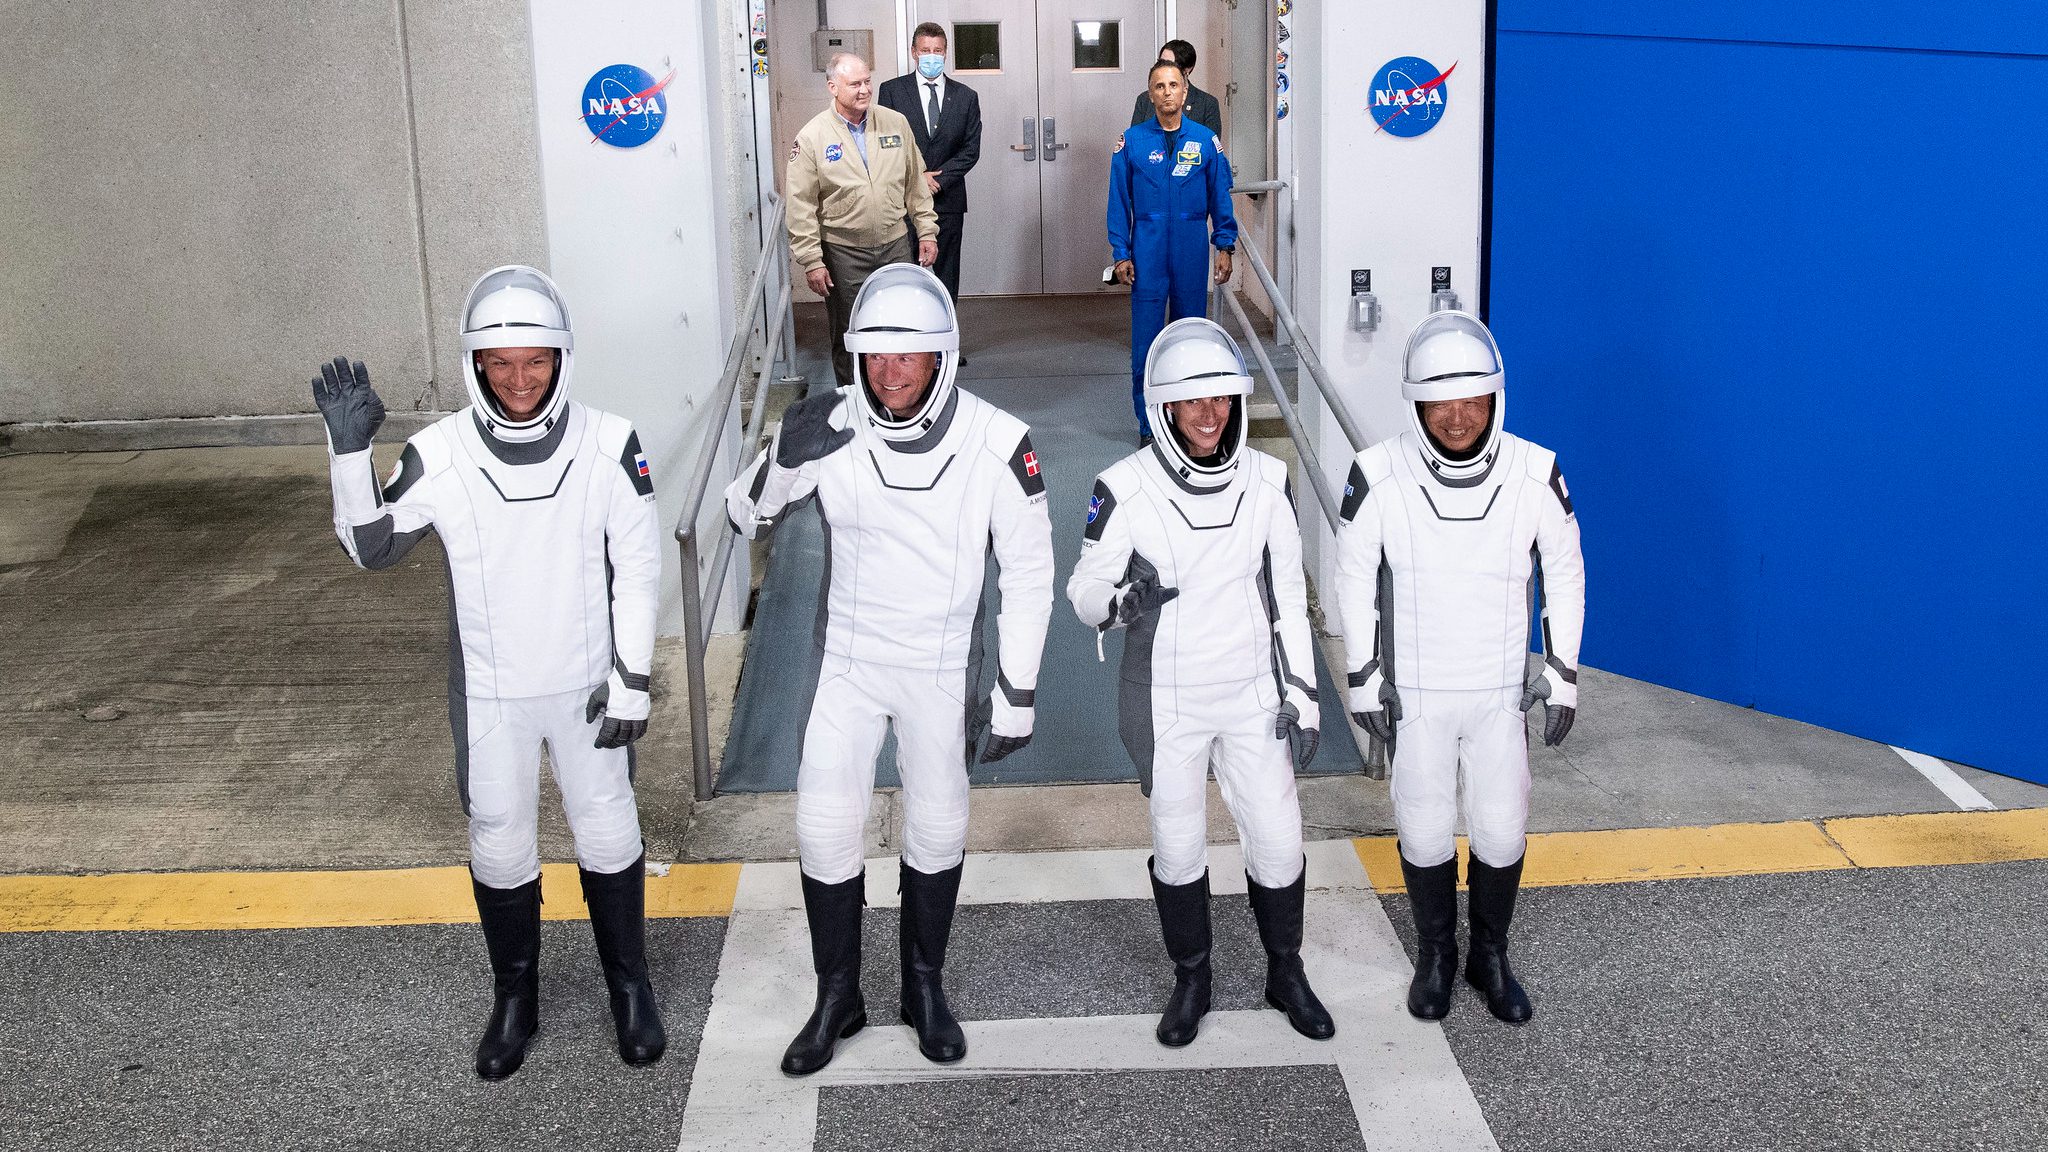 Empat astronot dengan pakaian antariksa hitam putih melambai saat mereka menuju landasan peluncuran